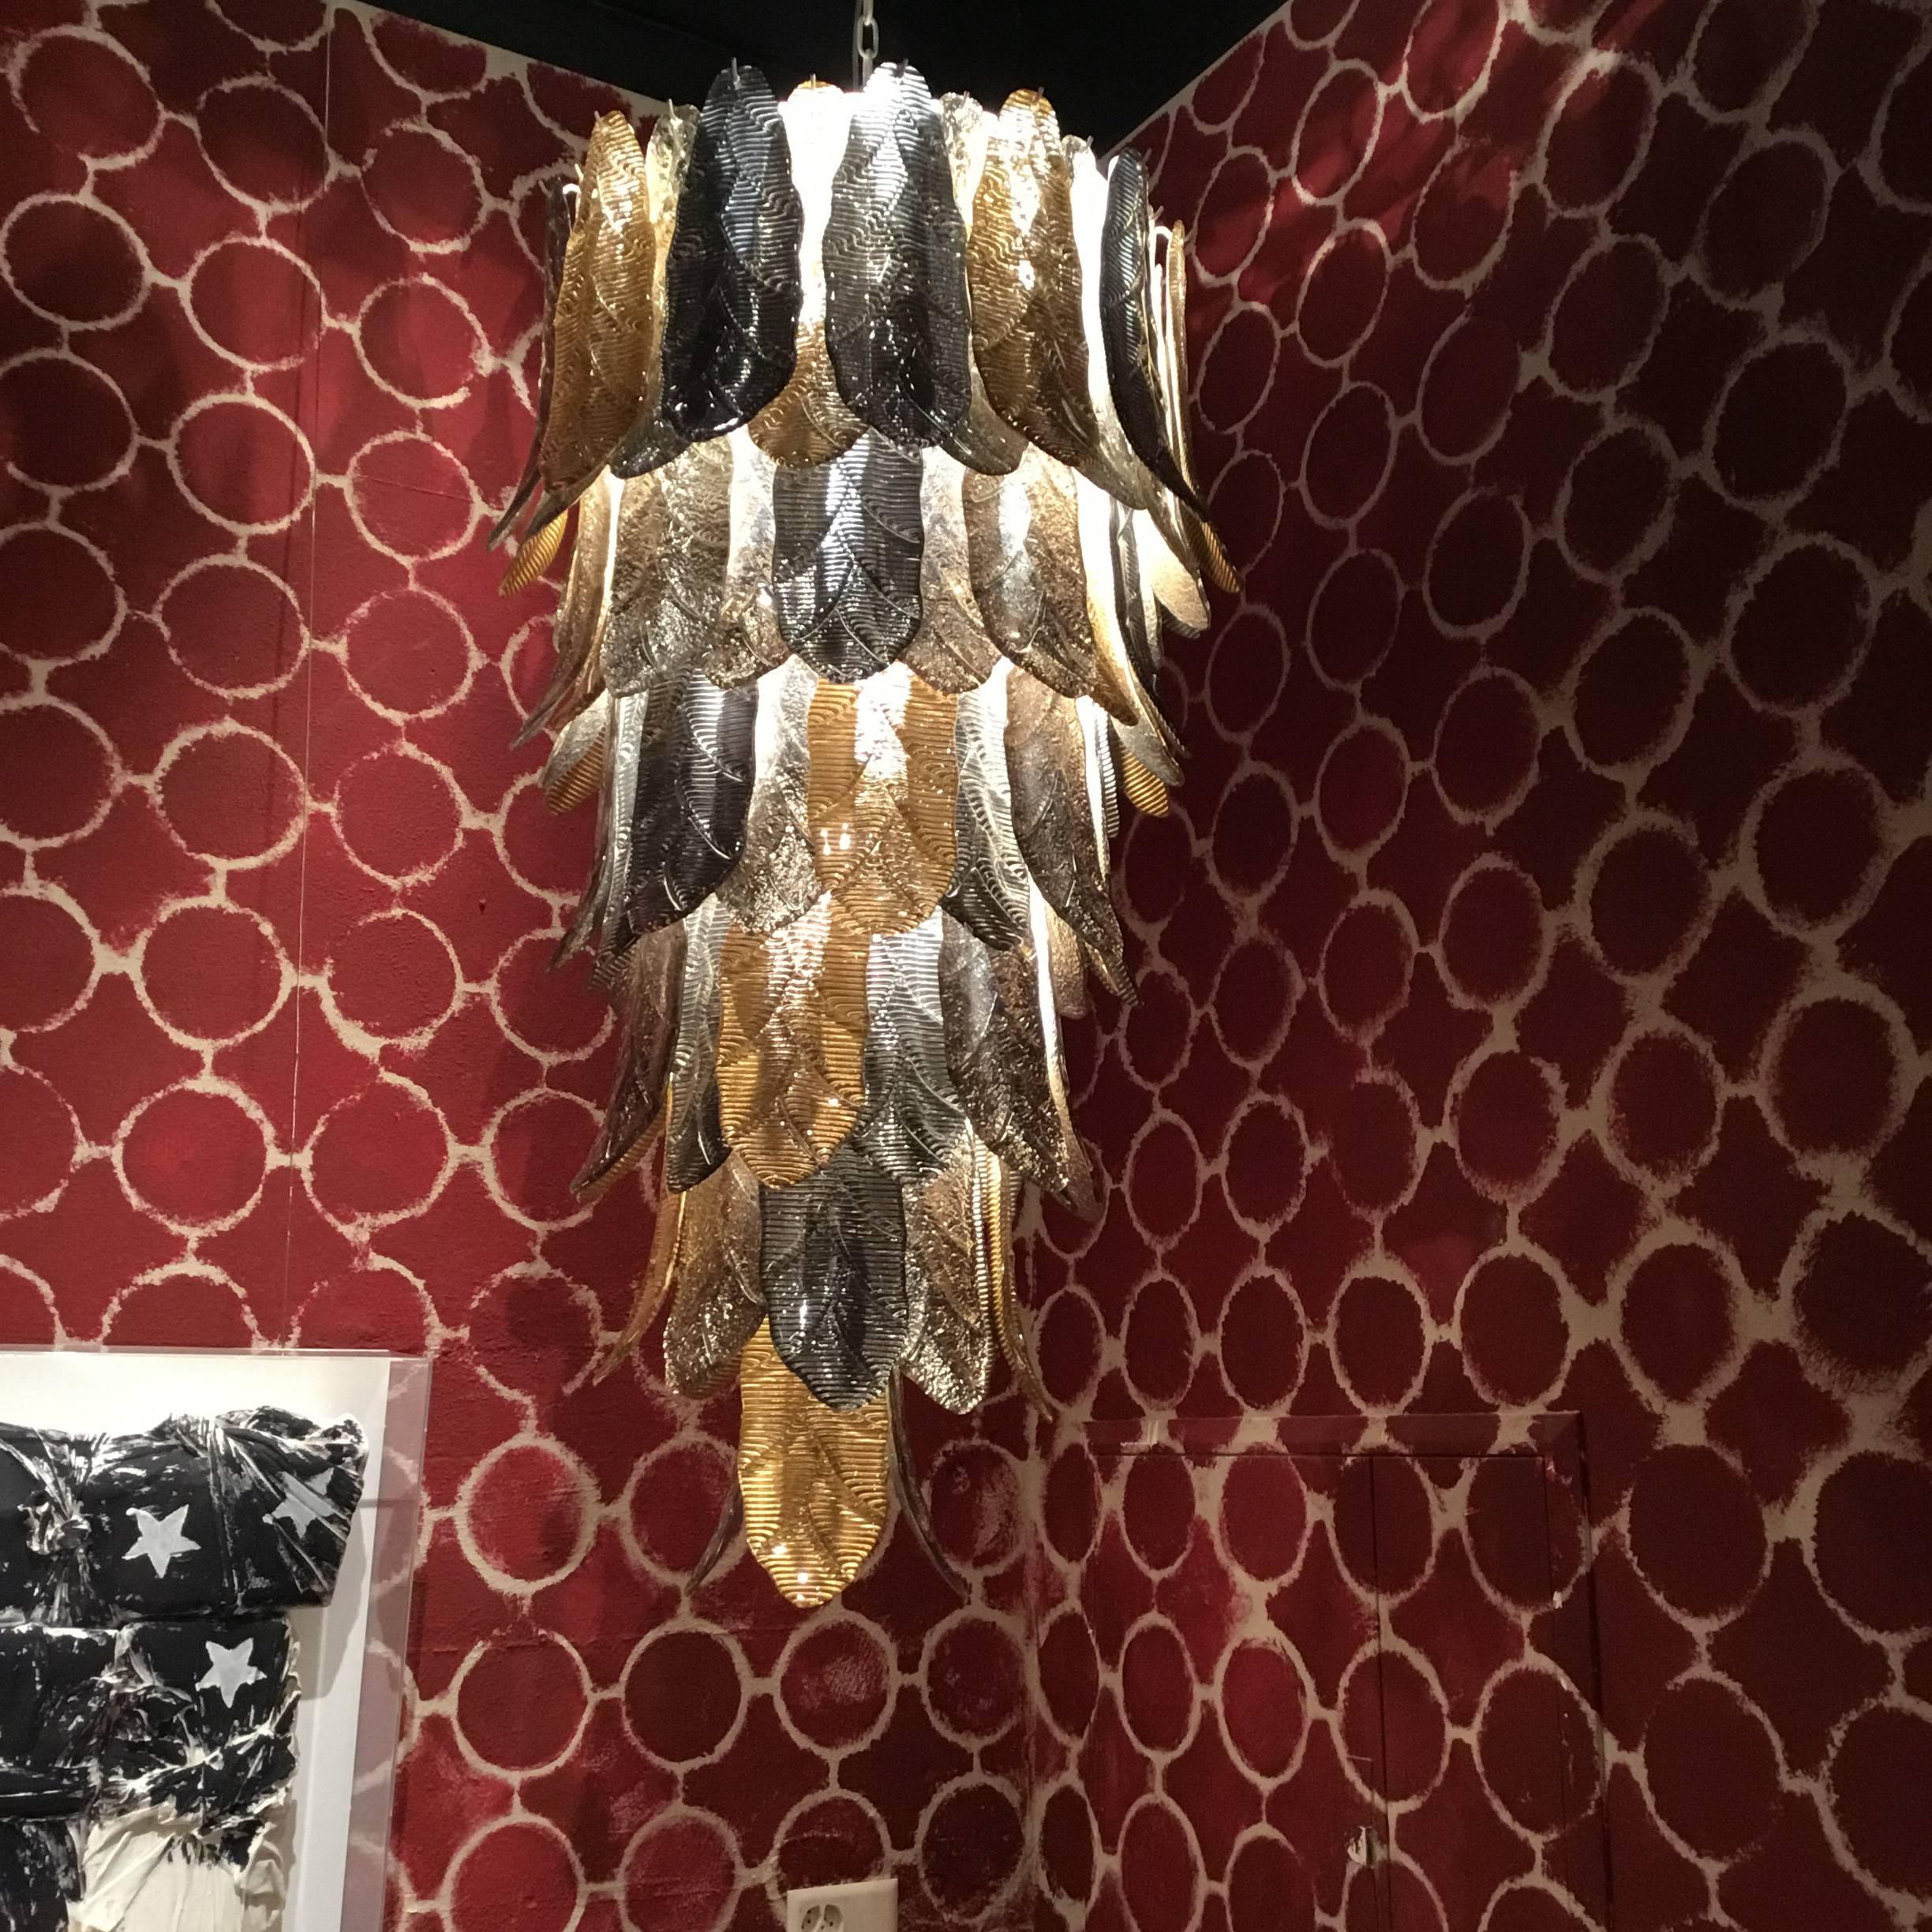 Pièce unique de lustre en verre de Murano, réalisée à la main par un artisan pour sa maison.
Structure en métal et feuilles en verre de Murano de couleur argentée et dorée.
Dimensions : H145xD45cm.